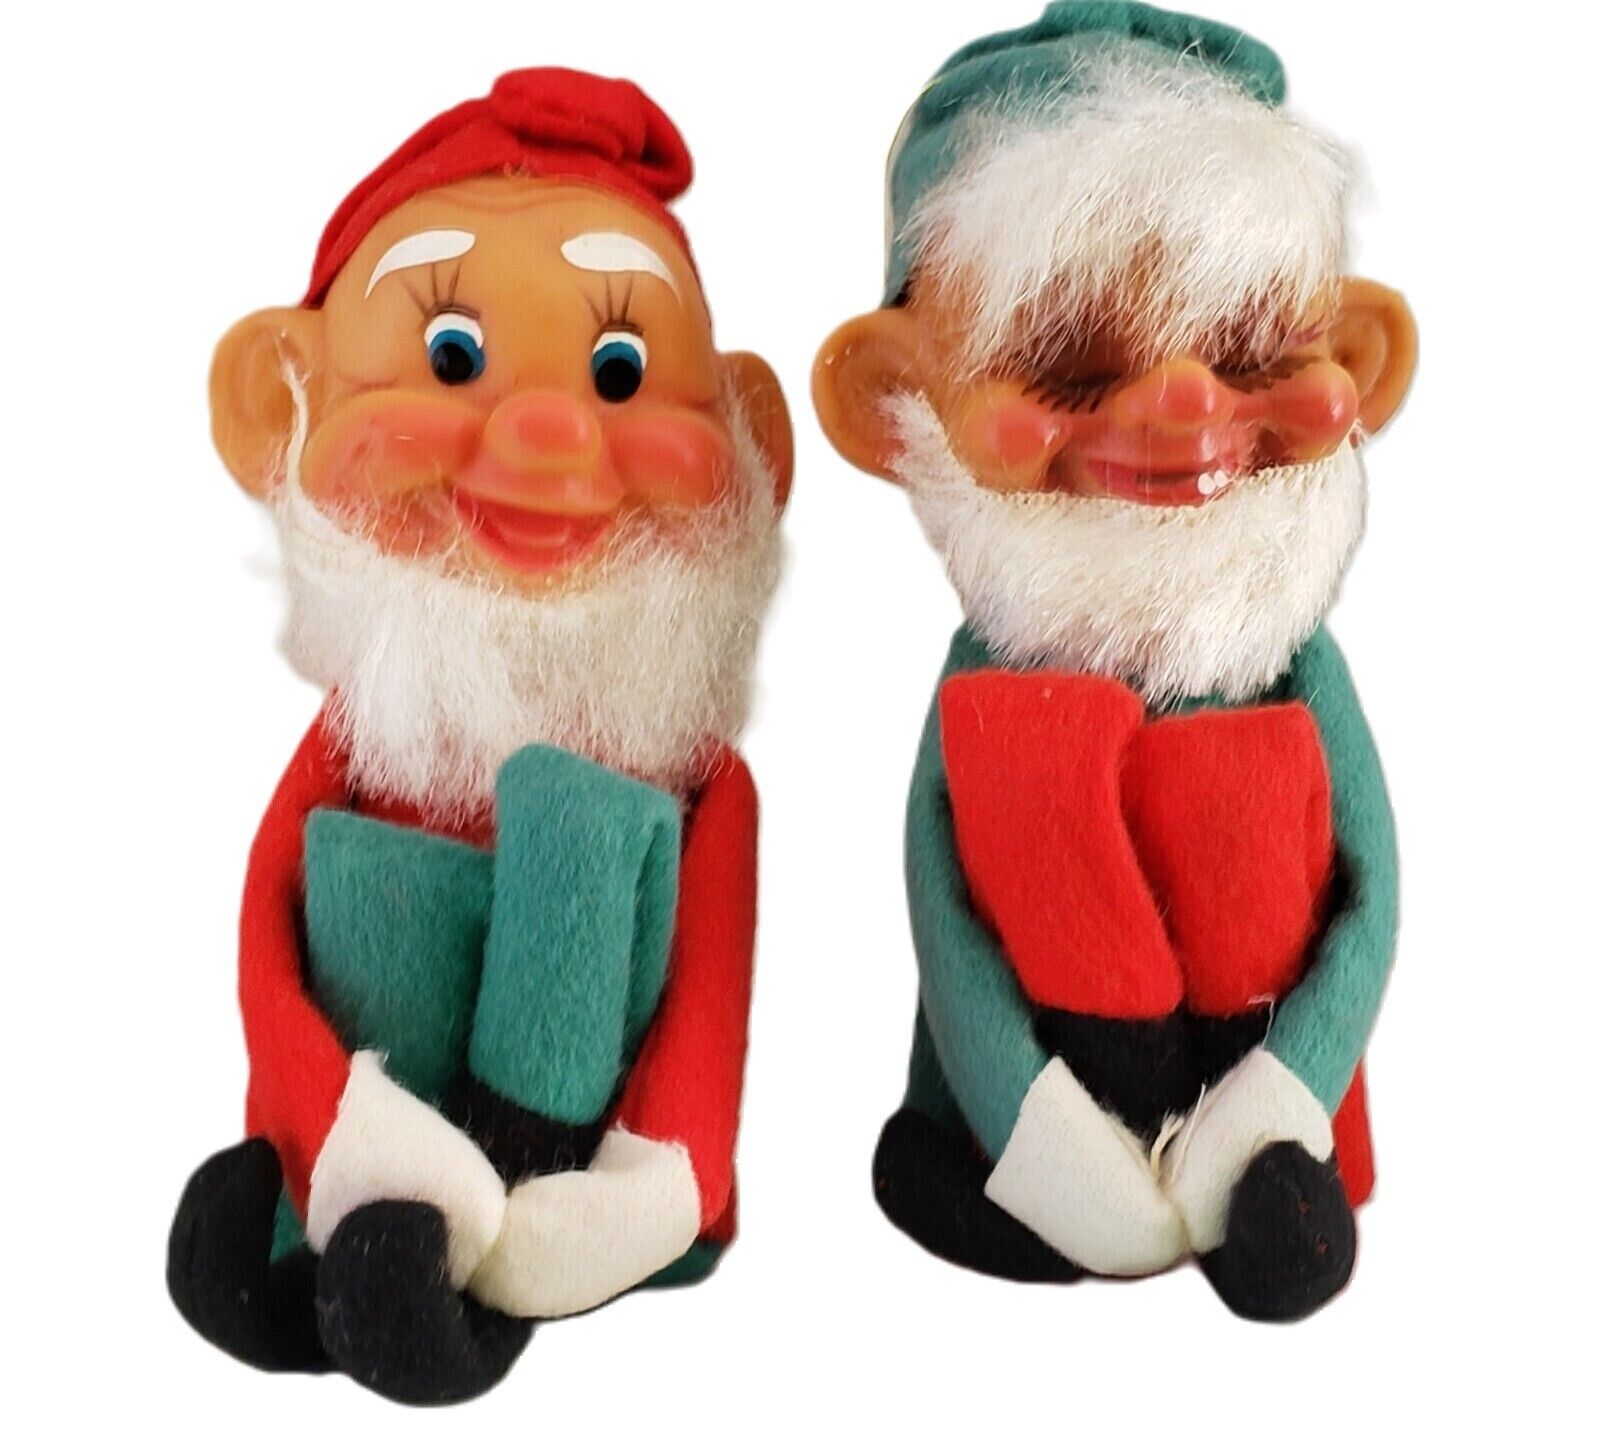 2 Vintage Knee Hugger Pixie Elf Gnome Dwarf Ornaments Green Red Felt Fur Japan